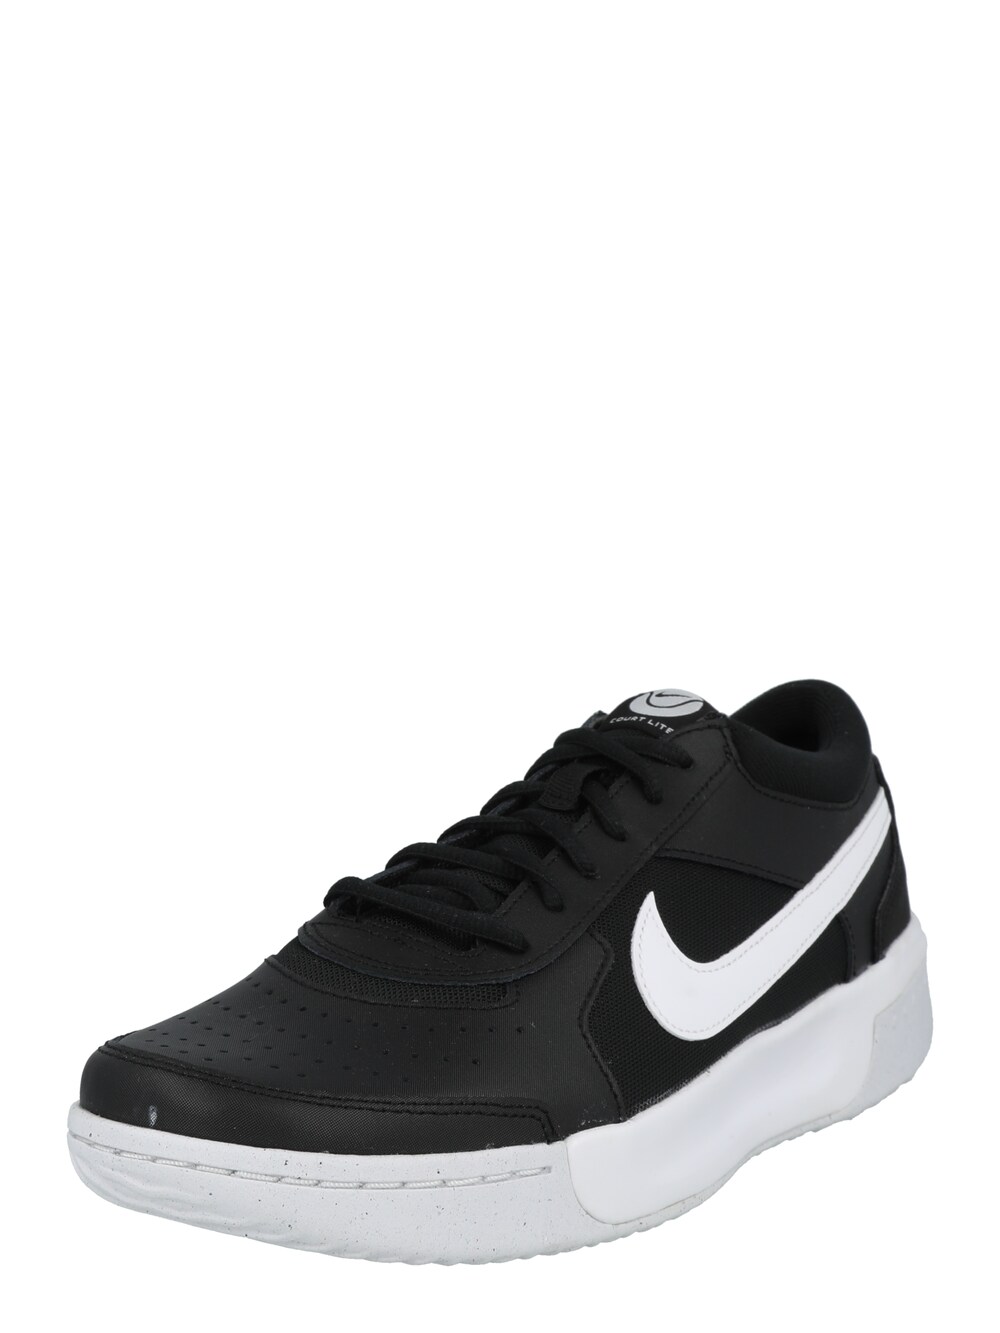 Спортивная обувь Nike, черный